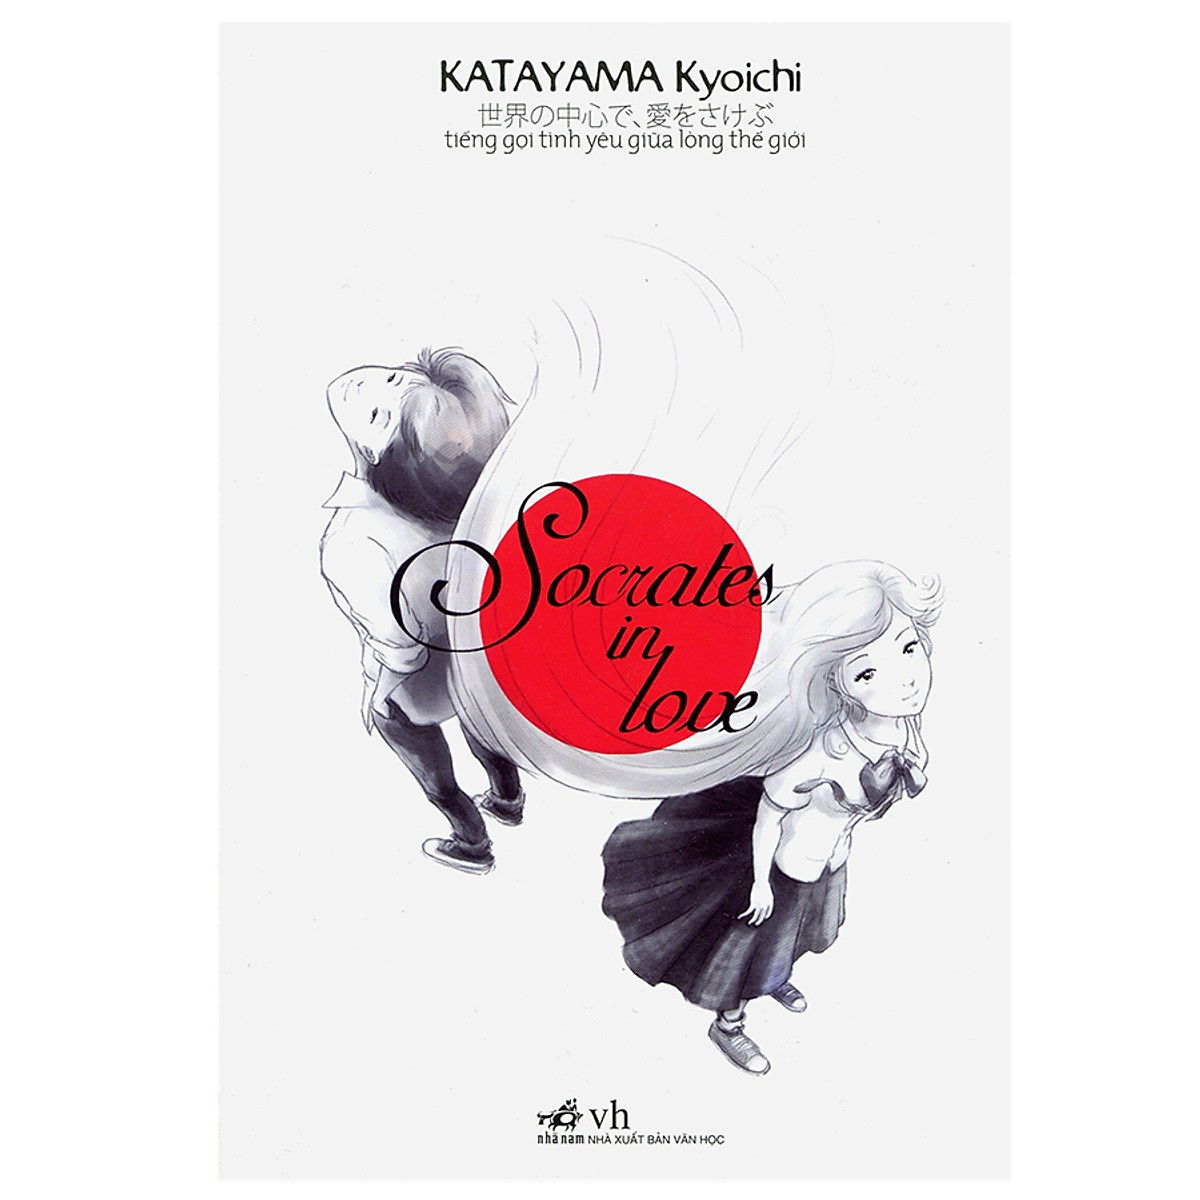 Cuốn sách mang đến thế giới kỷ niệm đầy ắp những cung bậc cảm xúc: Socrates in Love (Tiếng gọi tình yêu giữa lòng TG) (TB)